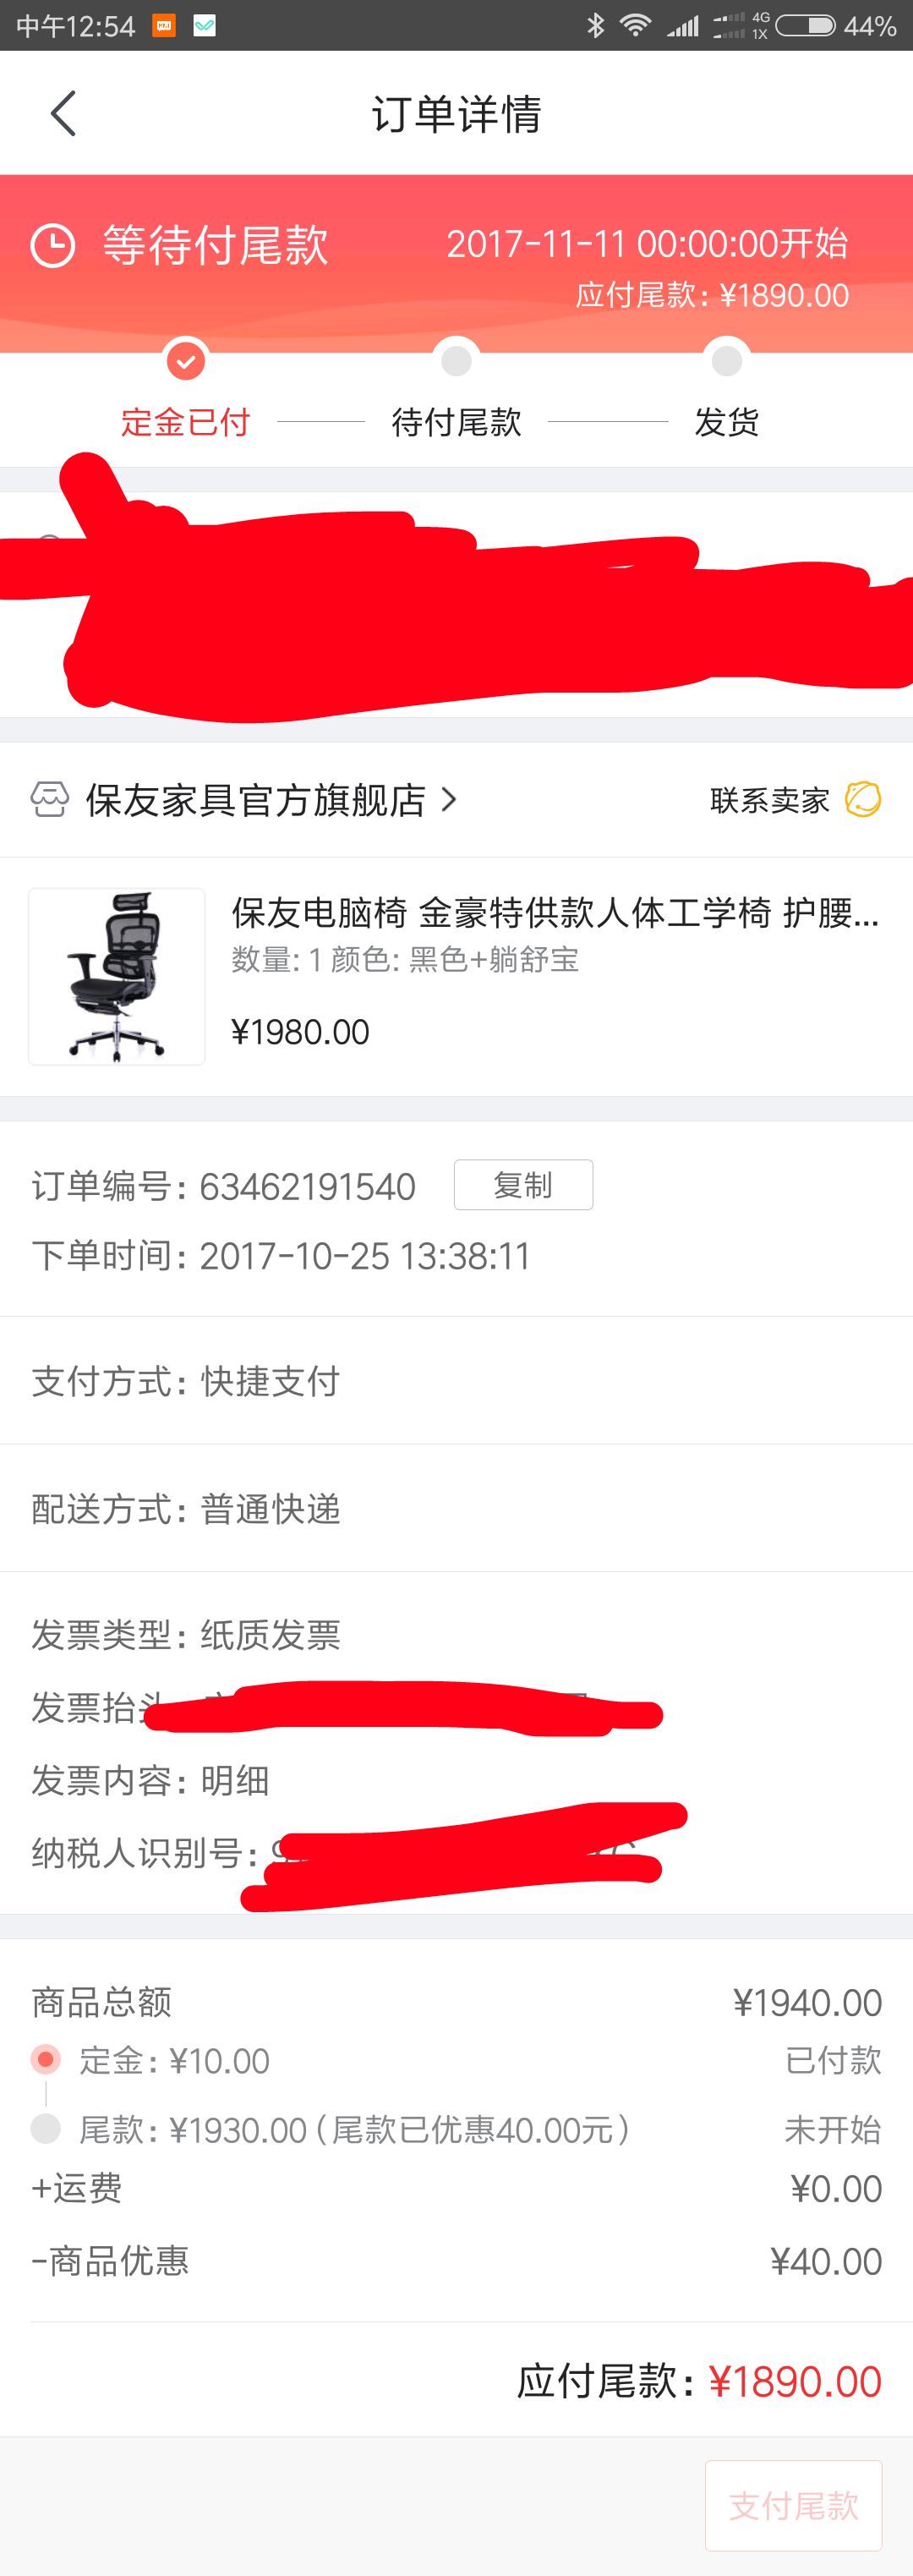 特供款人体工学椅 1900元(10元定金,11.11付尾